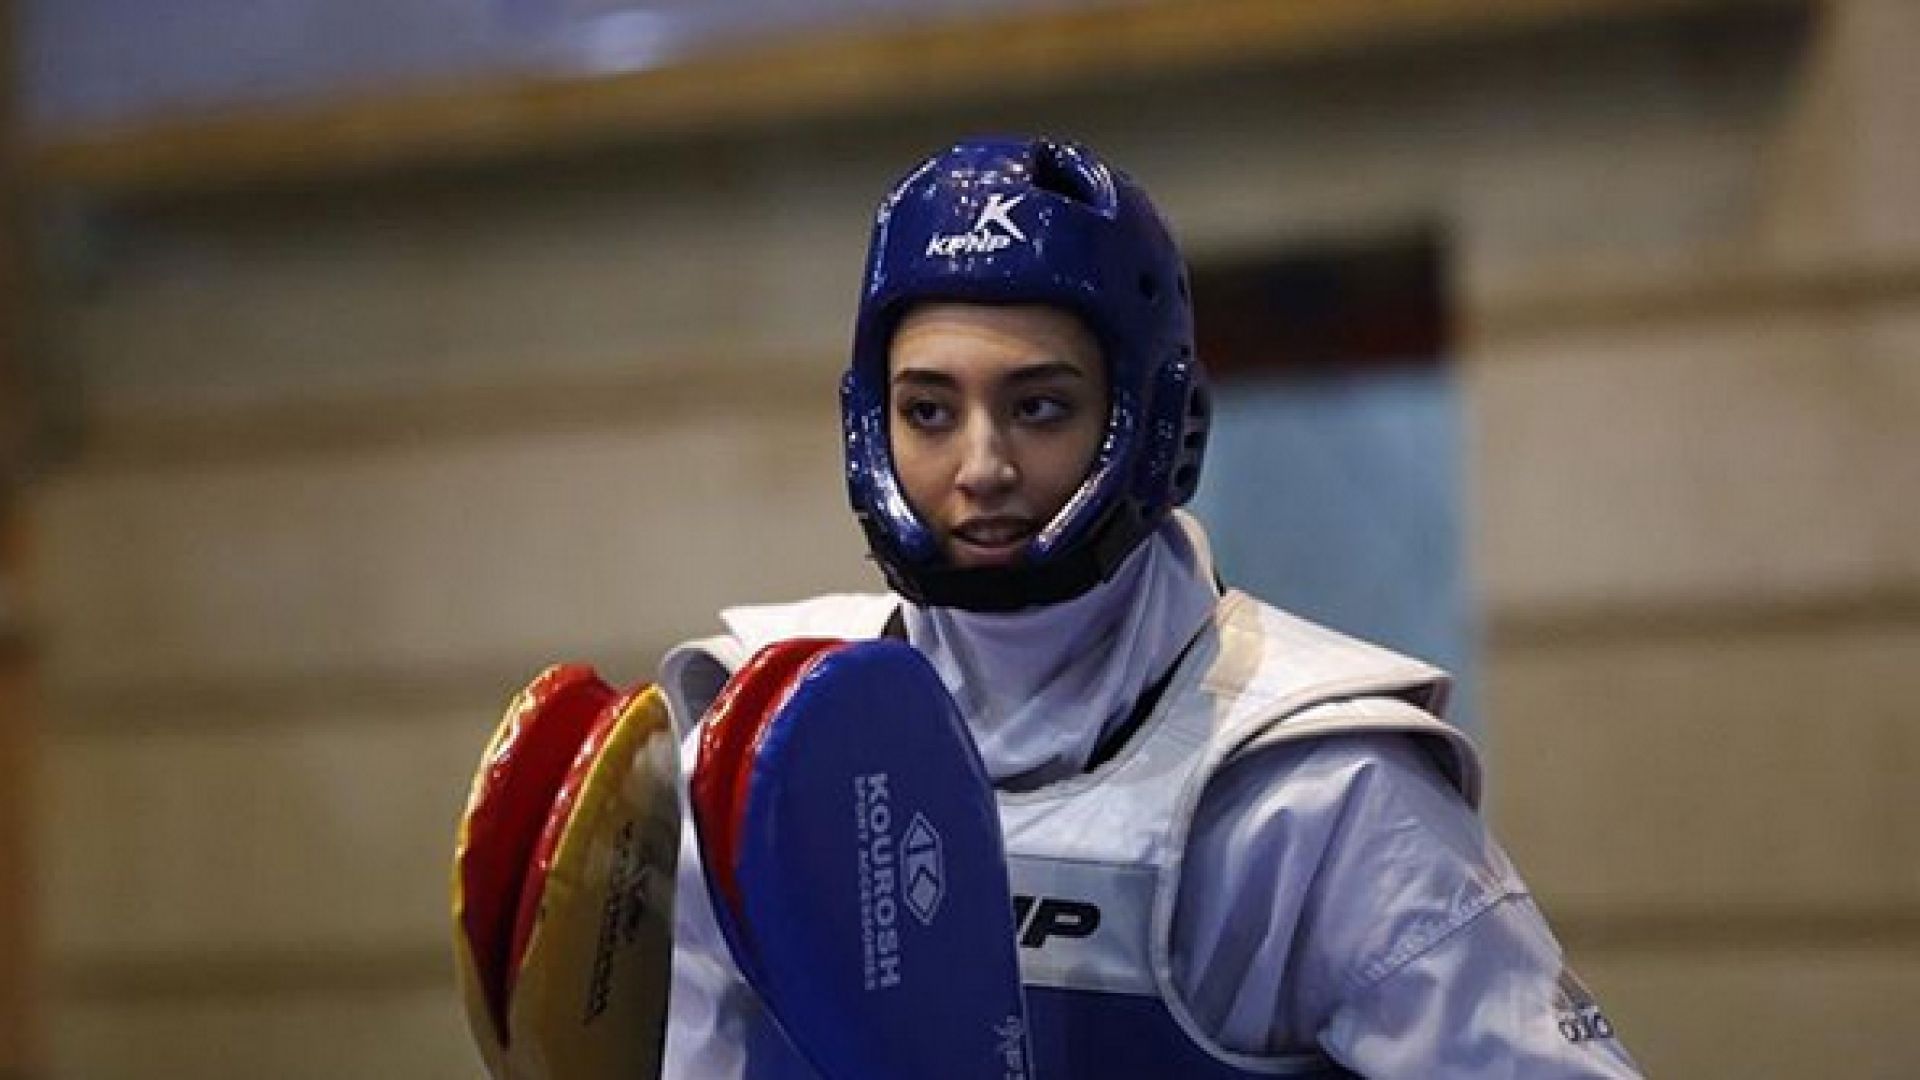 Състезателката по таекуондо Кимия Ализадех единствената олимпийска медалистка на Иран